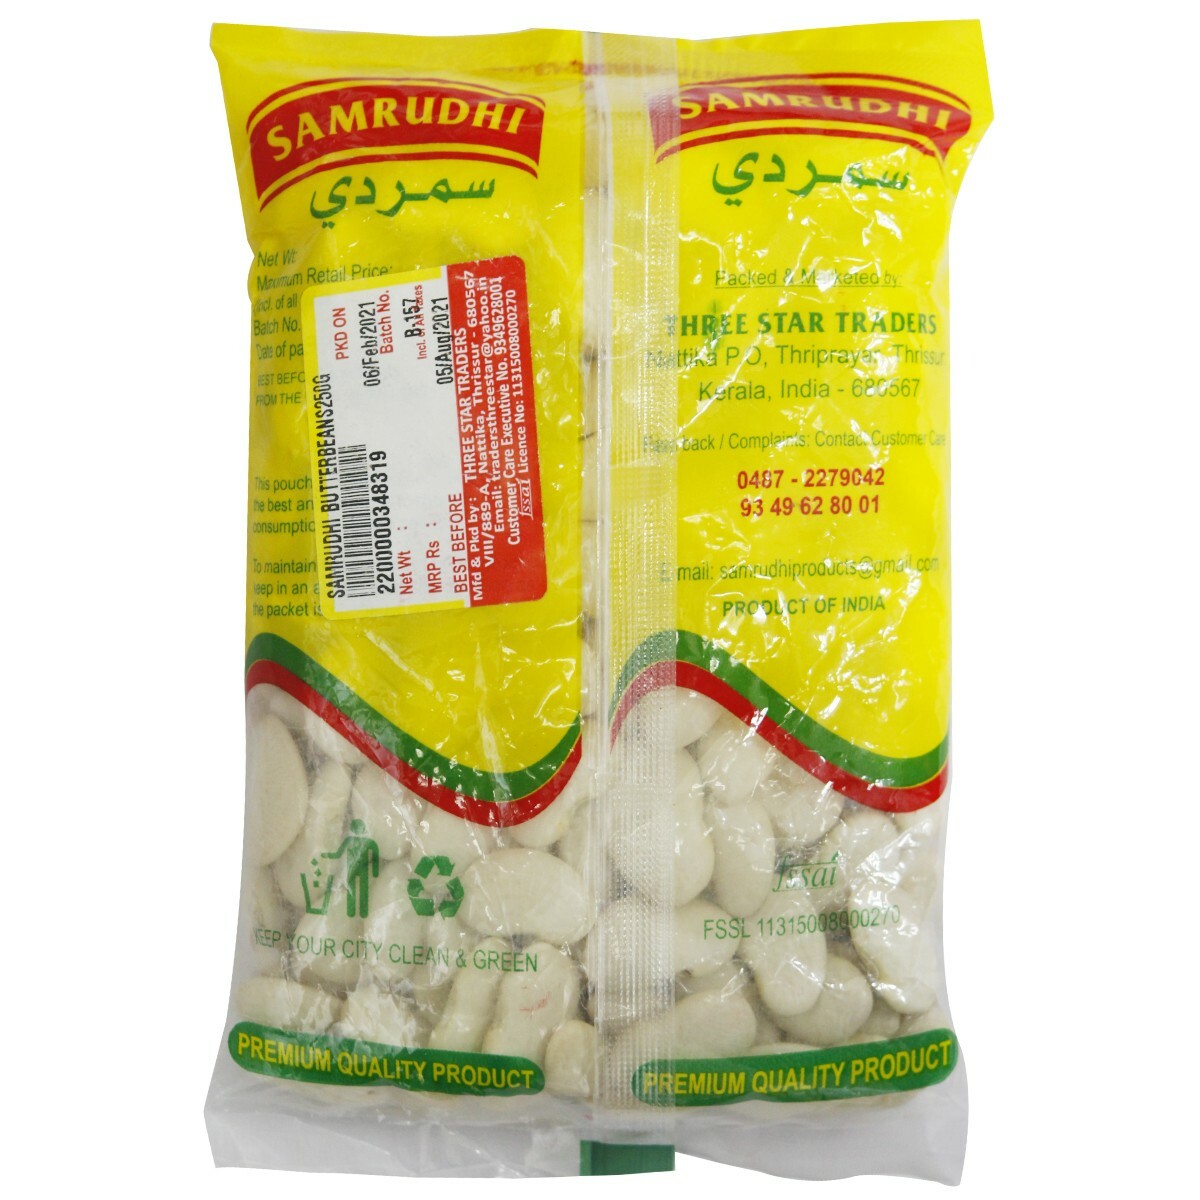 Samrudhi Butter Beans 250gm